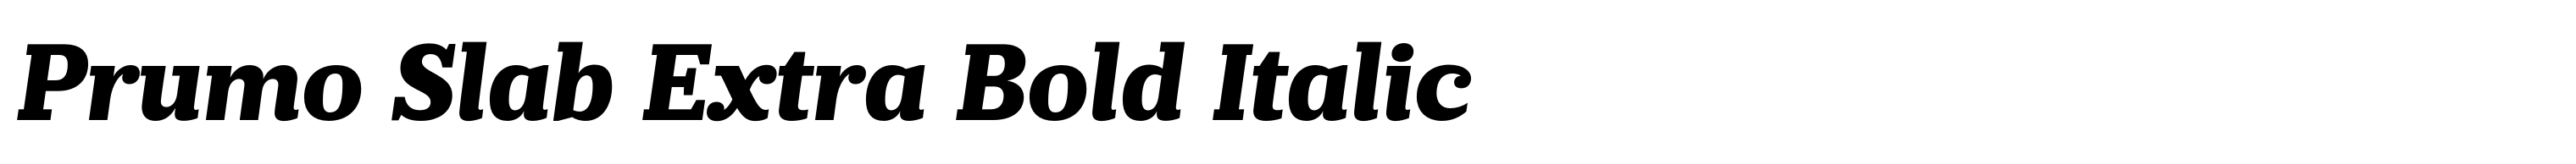 Prumo Slab Extra Bold Italic